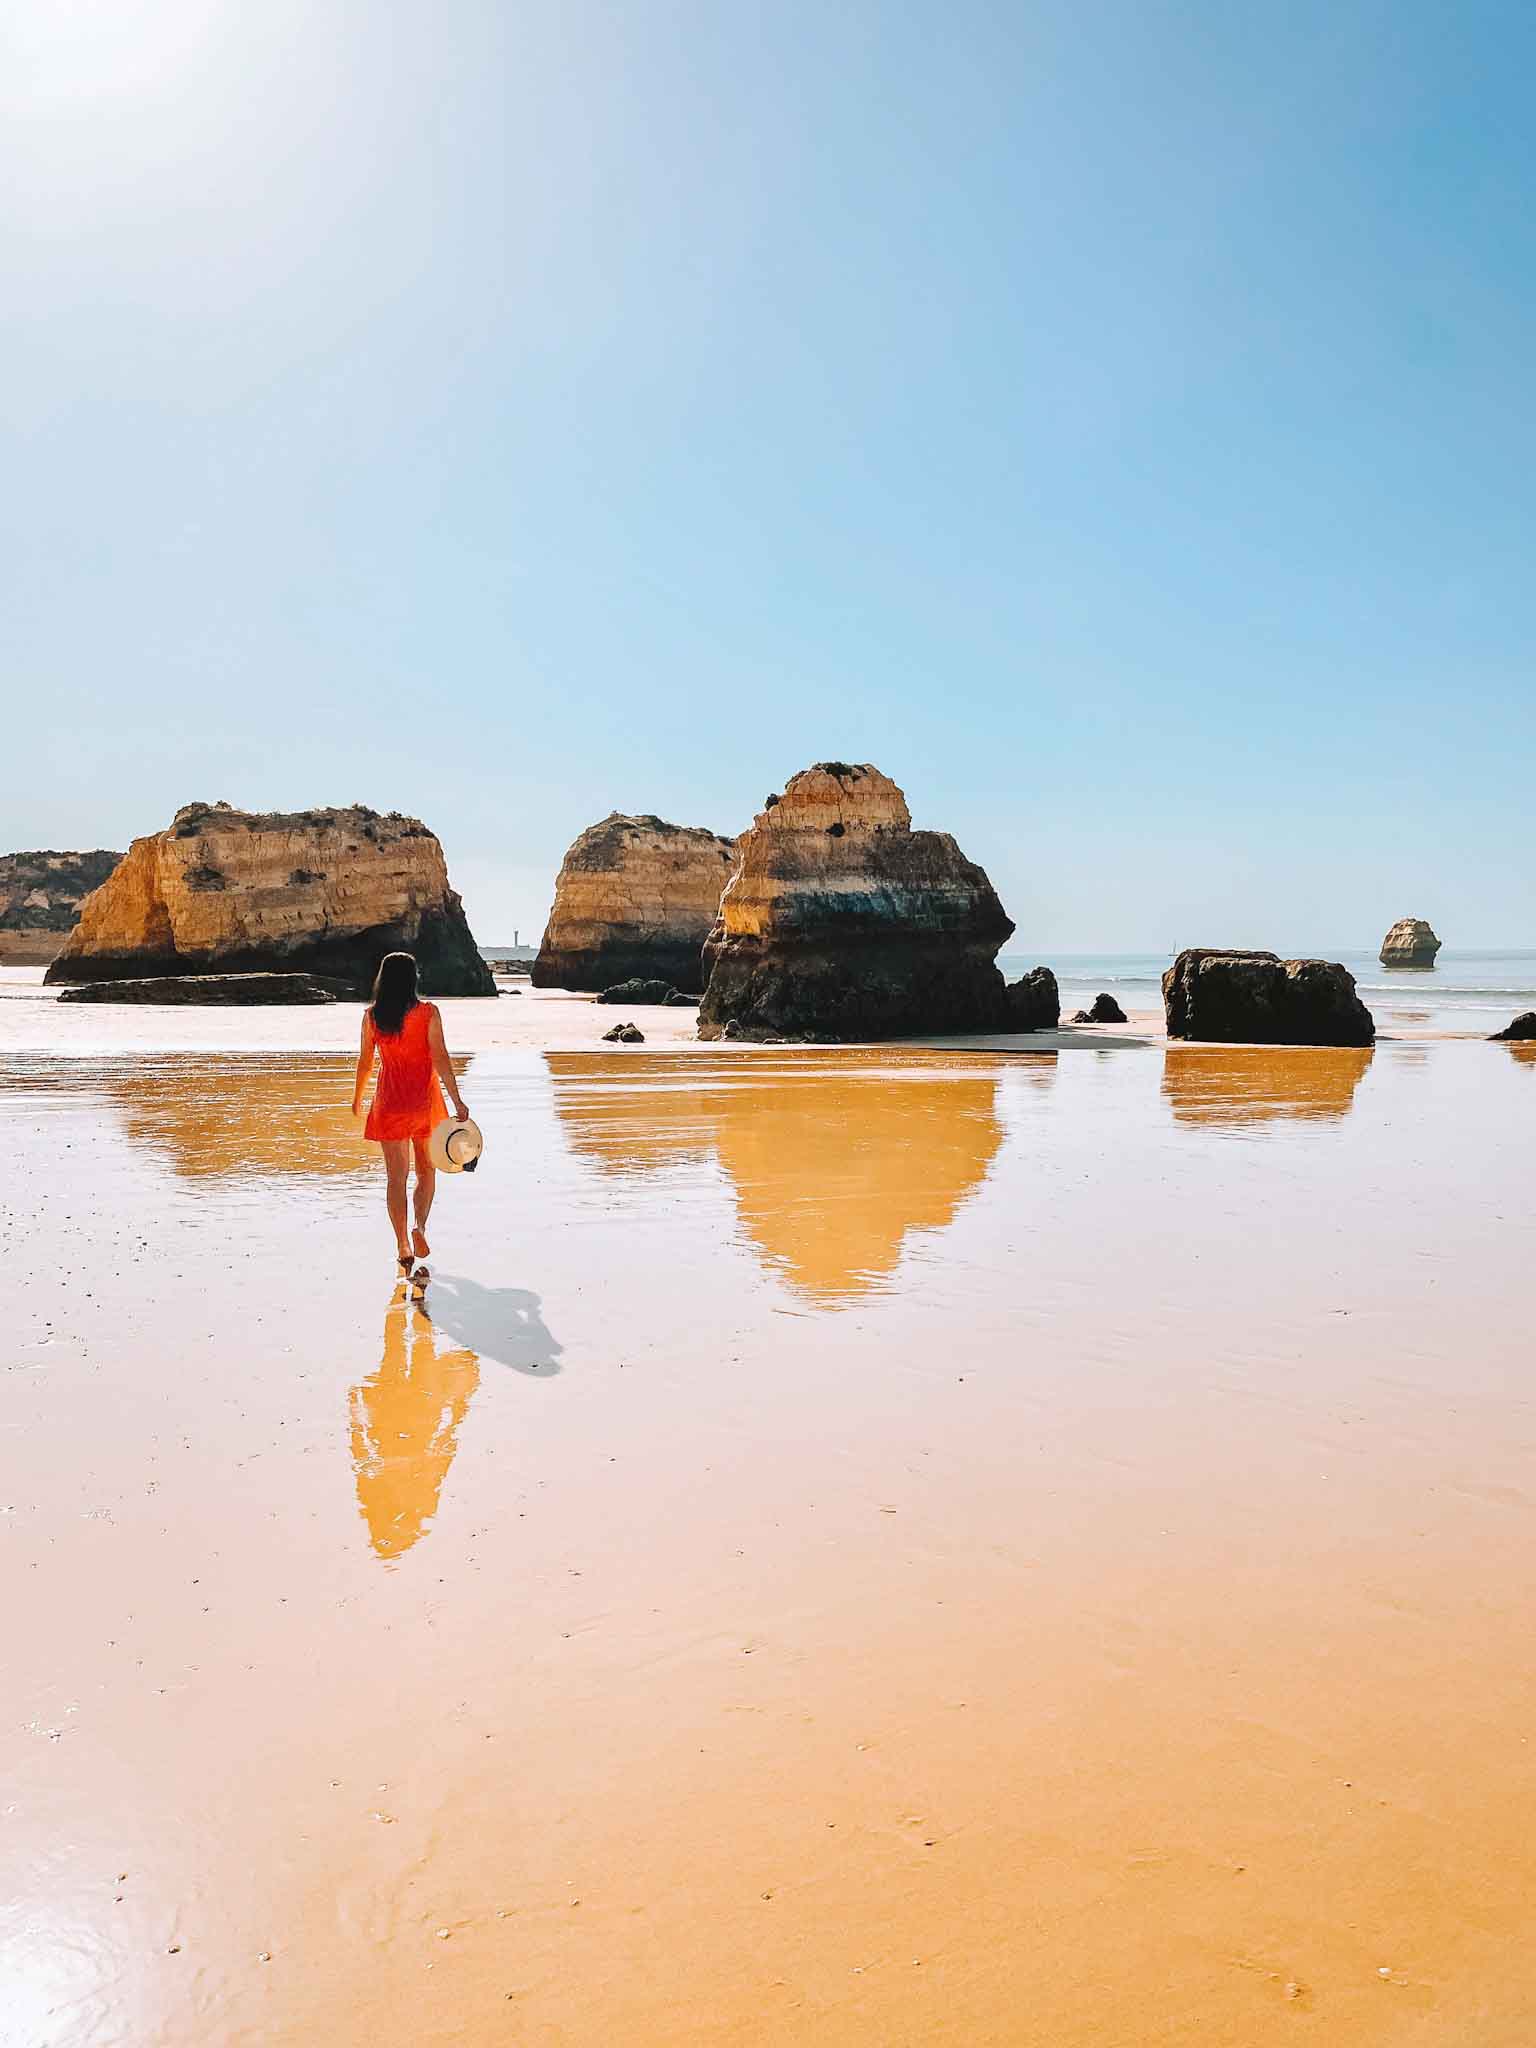 Best Instagram spots in Algarve in Portugal - Praia dos Três Castelos